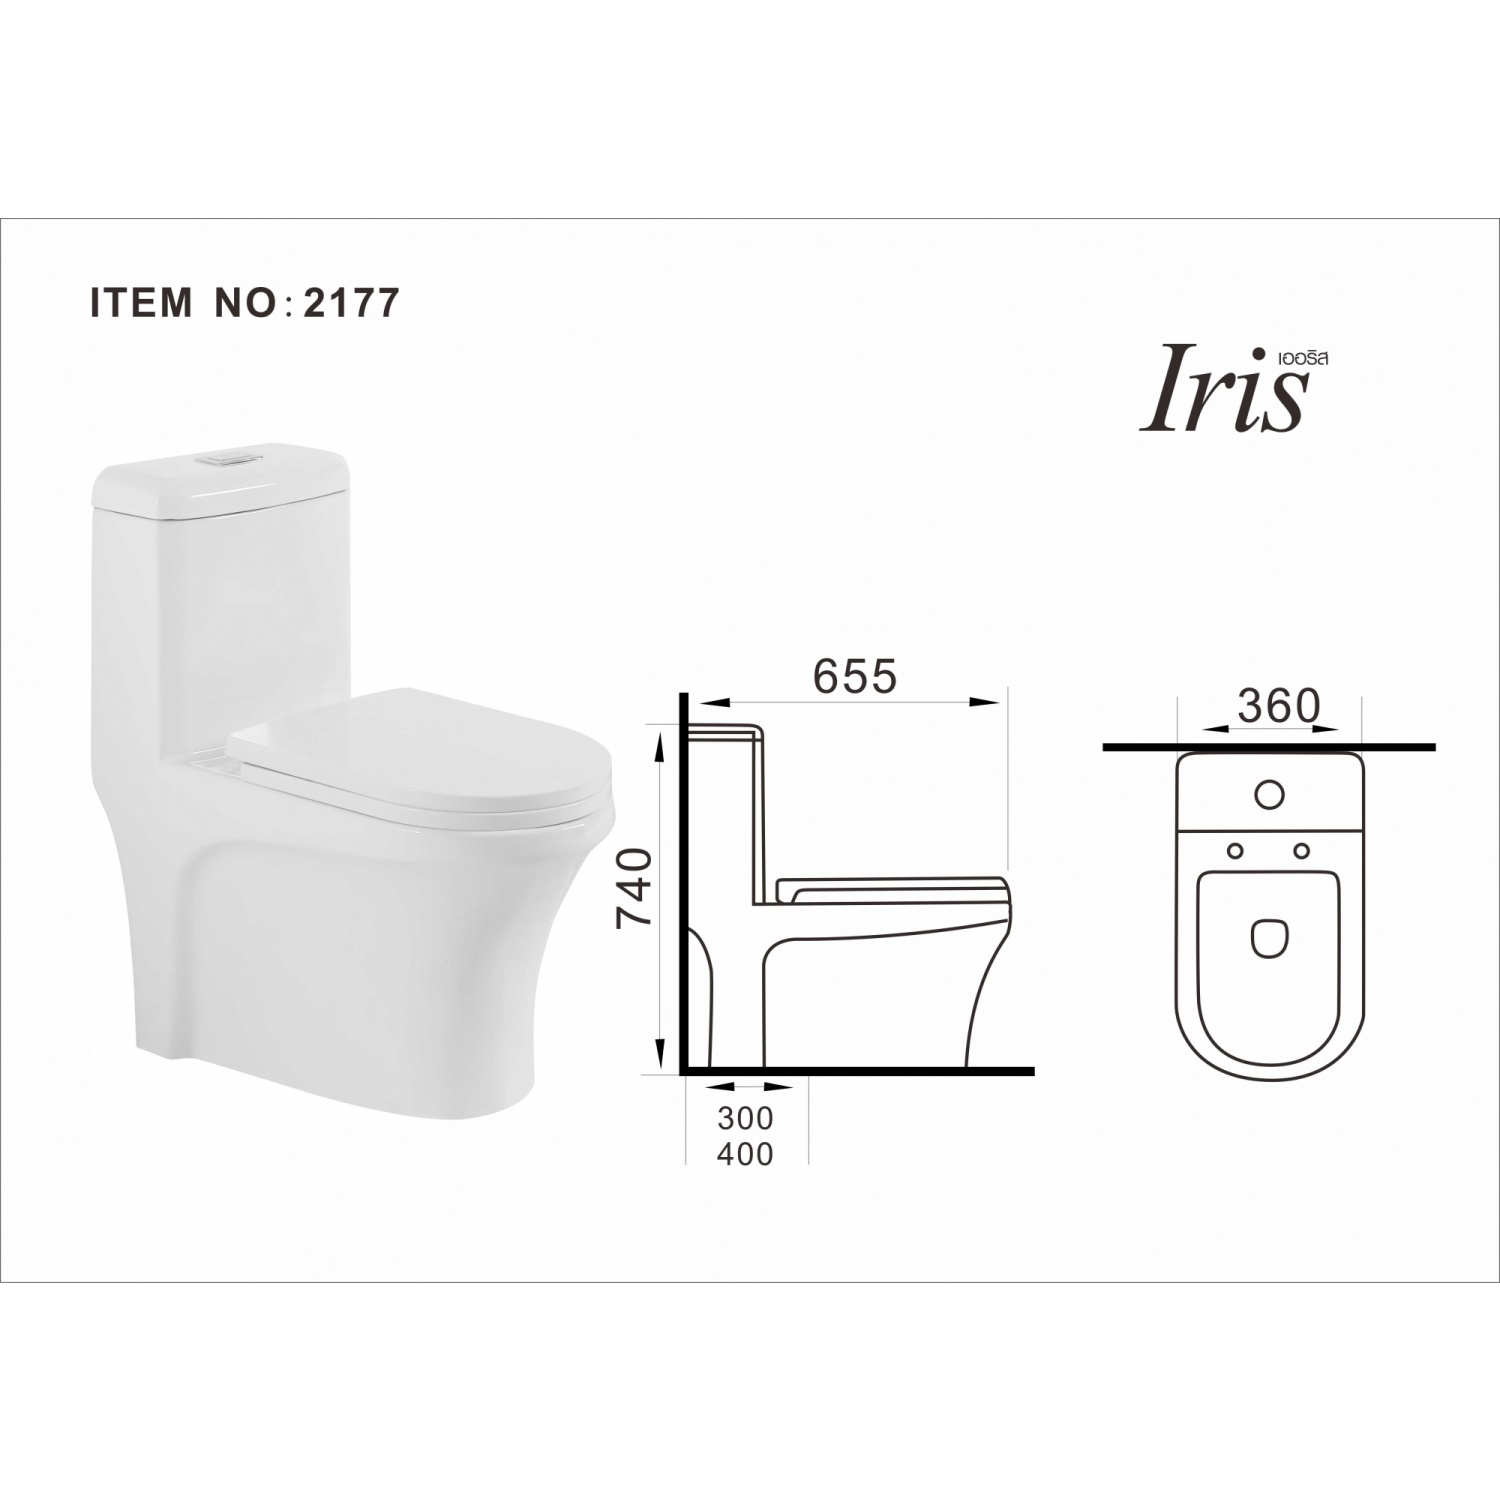 IRIS สุขภัณฑ์ชิ้นเดียวแบบกดบน รุ่น ไวโอเลต IR-2177 ขนาด  สีขาว